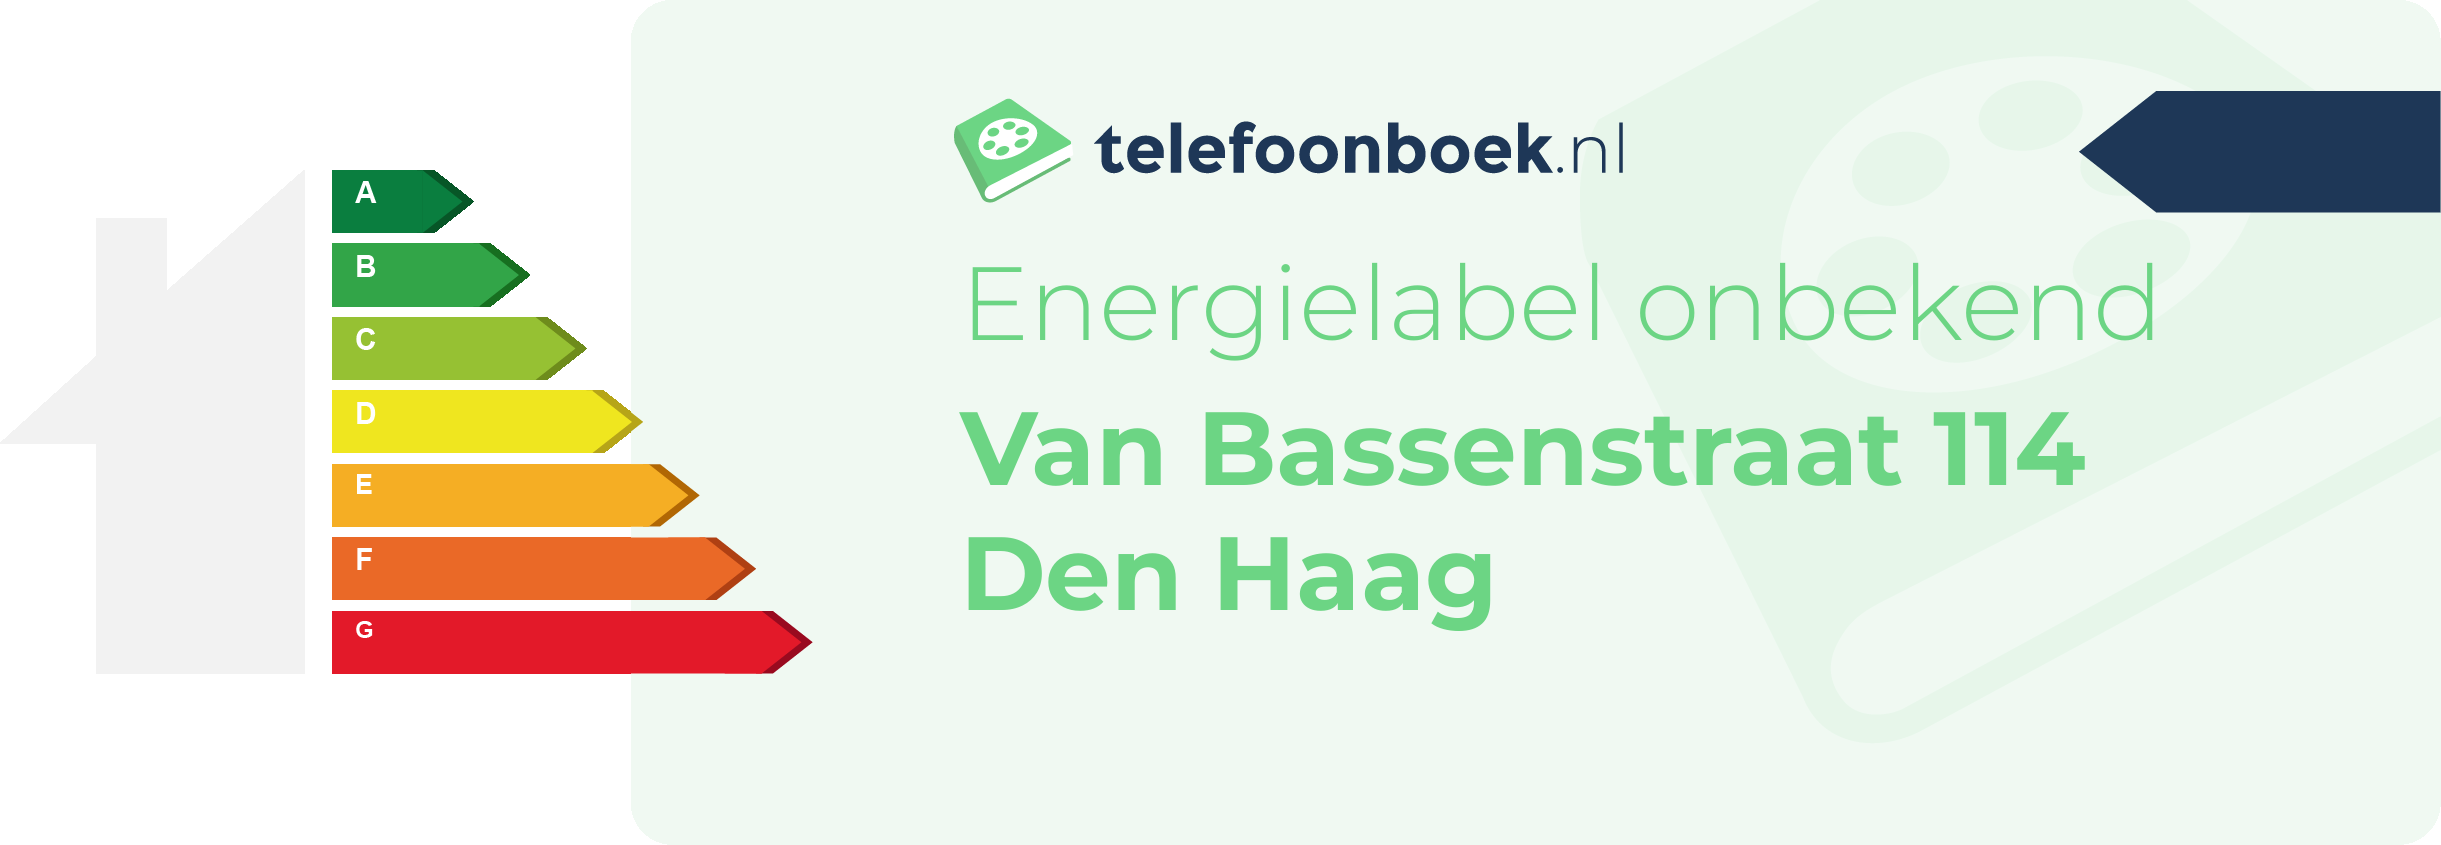 Energielabel Van Bassenstraat 114 Den Haag